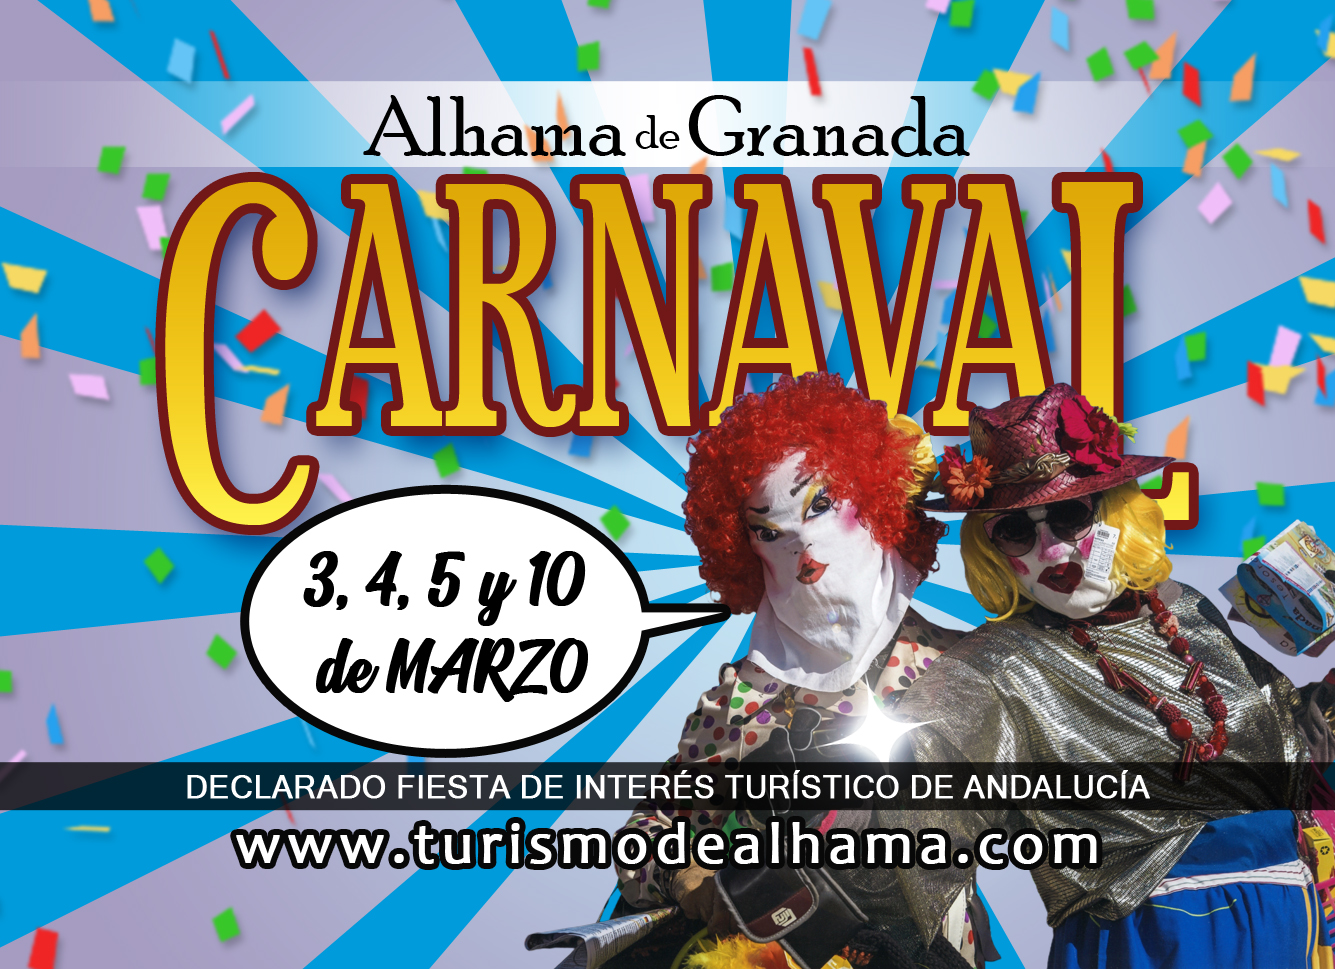 El Carnaval de Alhama en marzo, no te lo pierdas